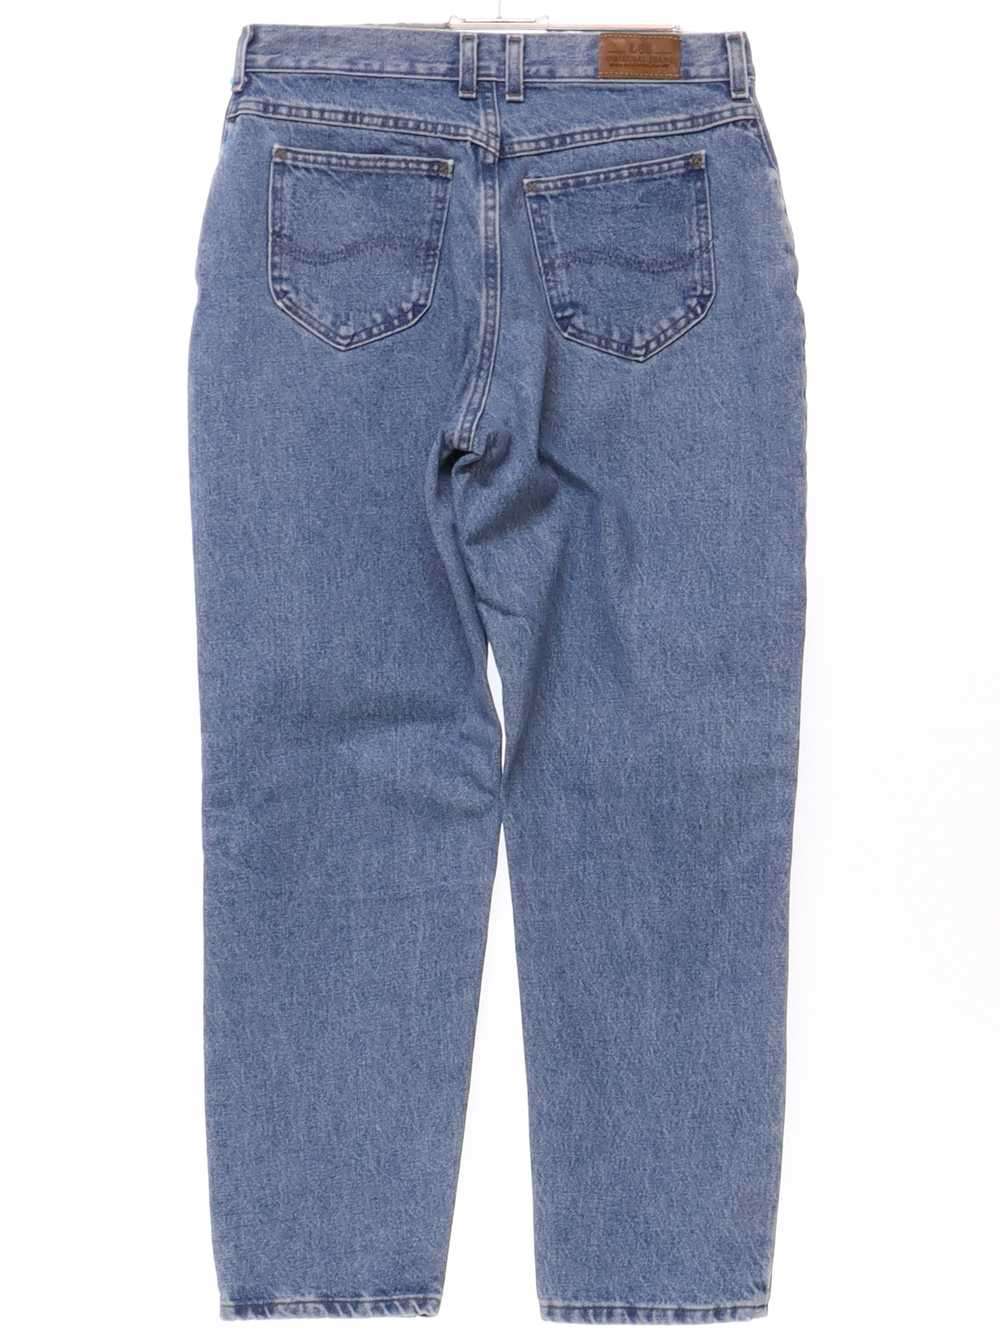 1990's Lee Womens Lee Denim Jeans Pants - image 3